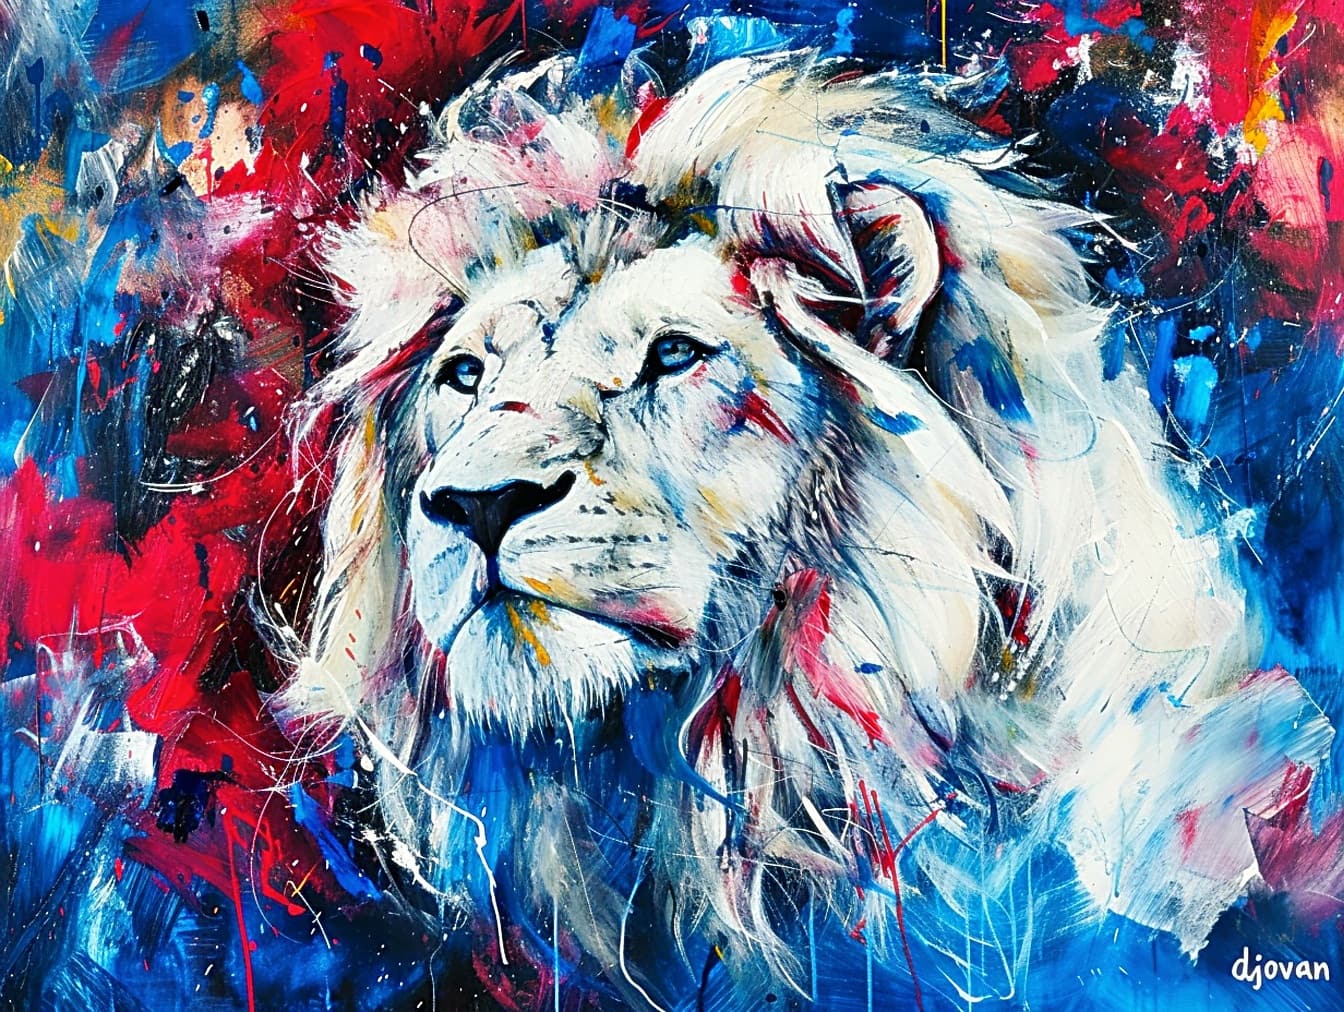 Obraz olejny przedstawiający białą głowę lwa z niebieskimi oczami w stylu pop art